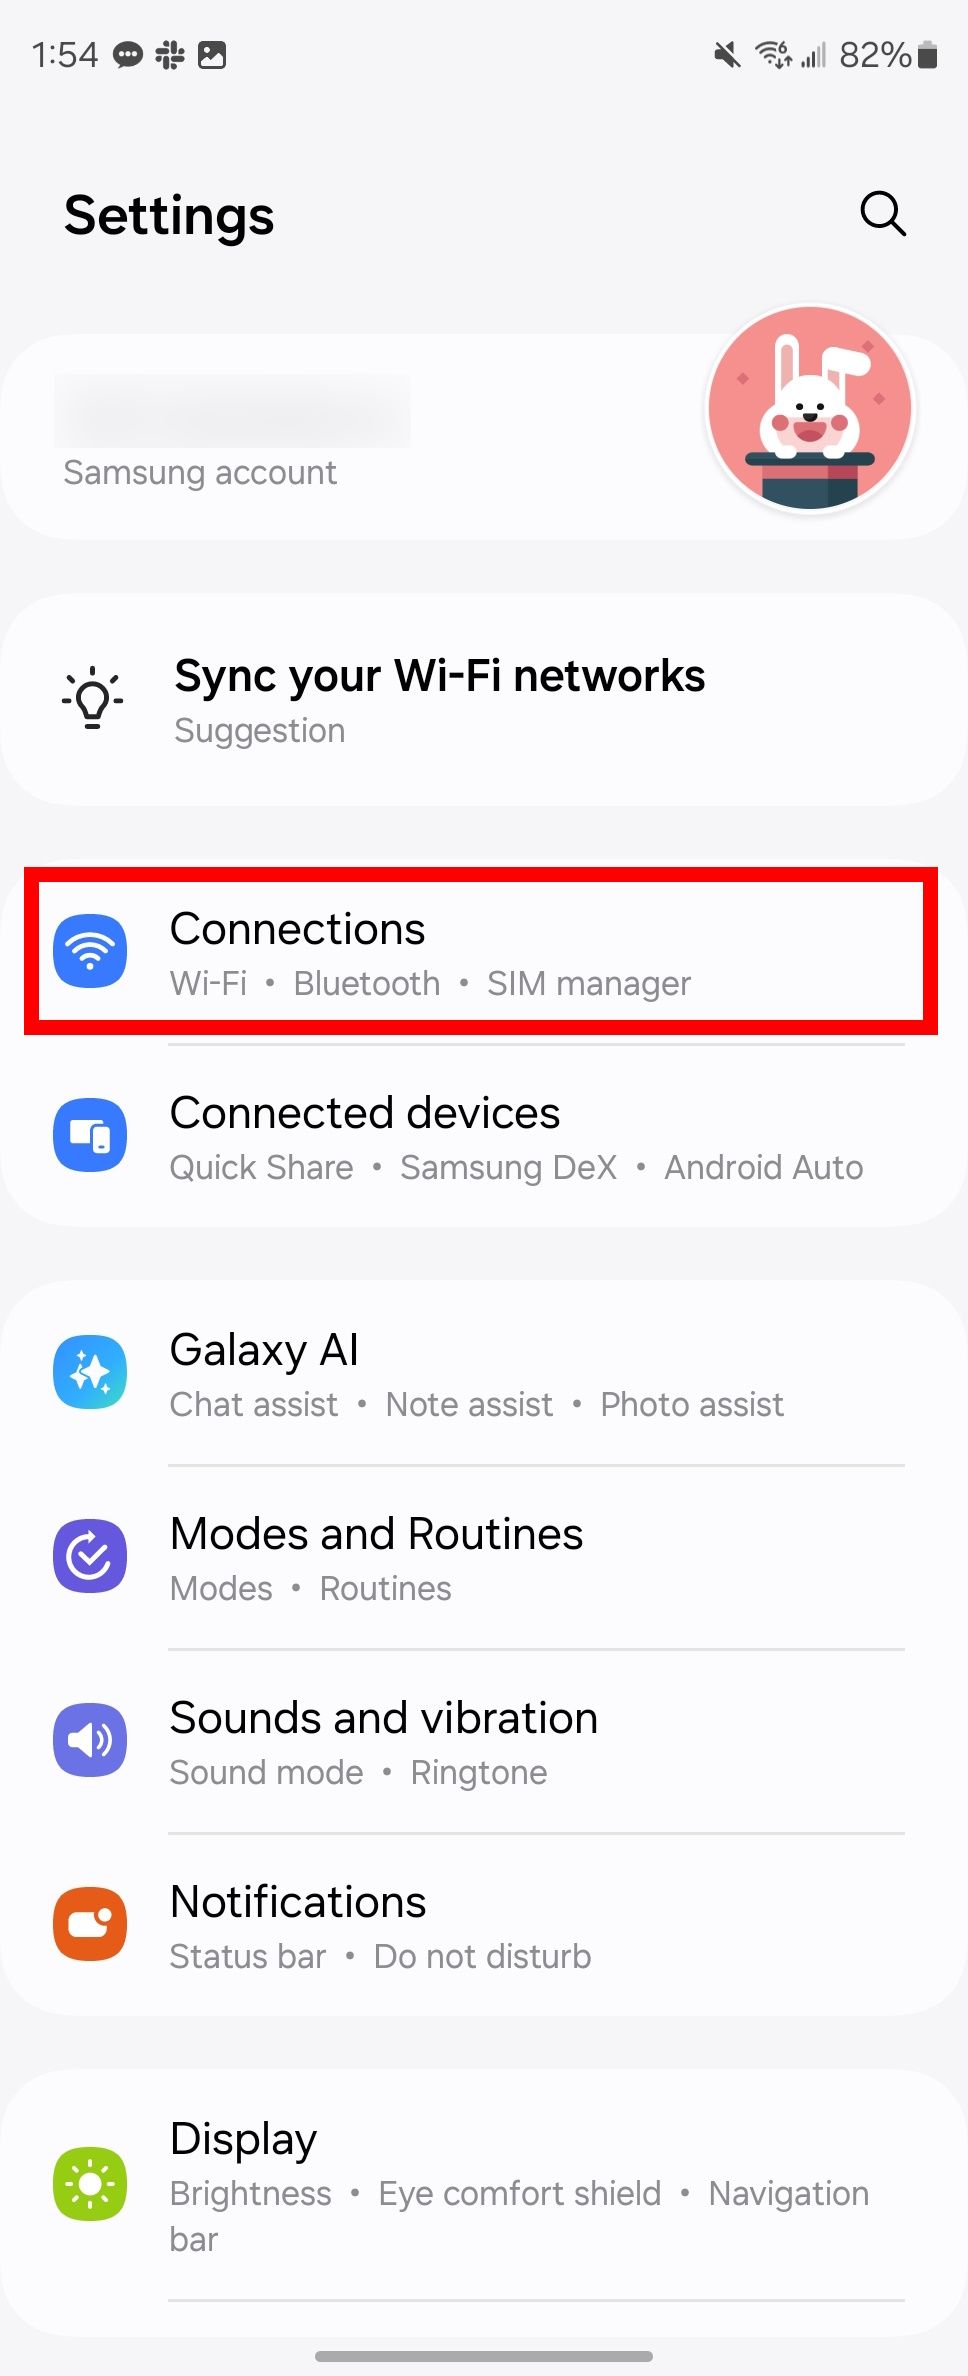 Contorno de retângulo vermelho destacando conexões nas configurações do Samsung